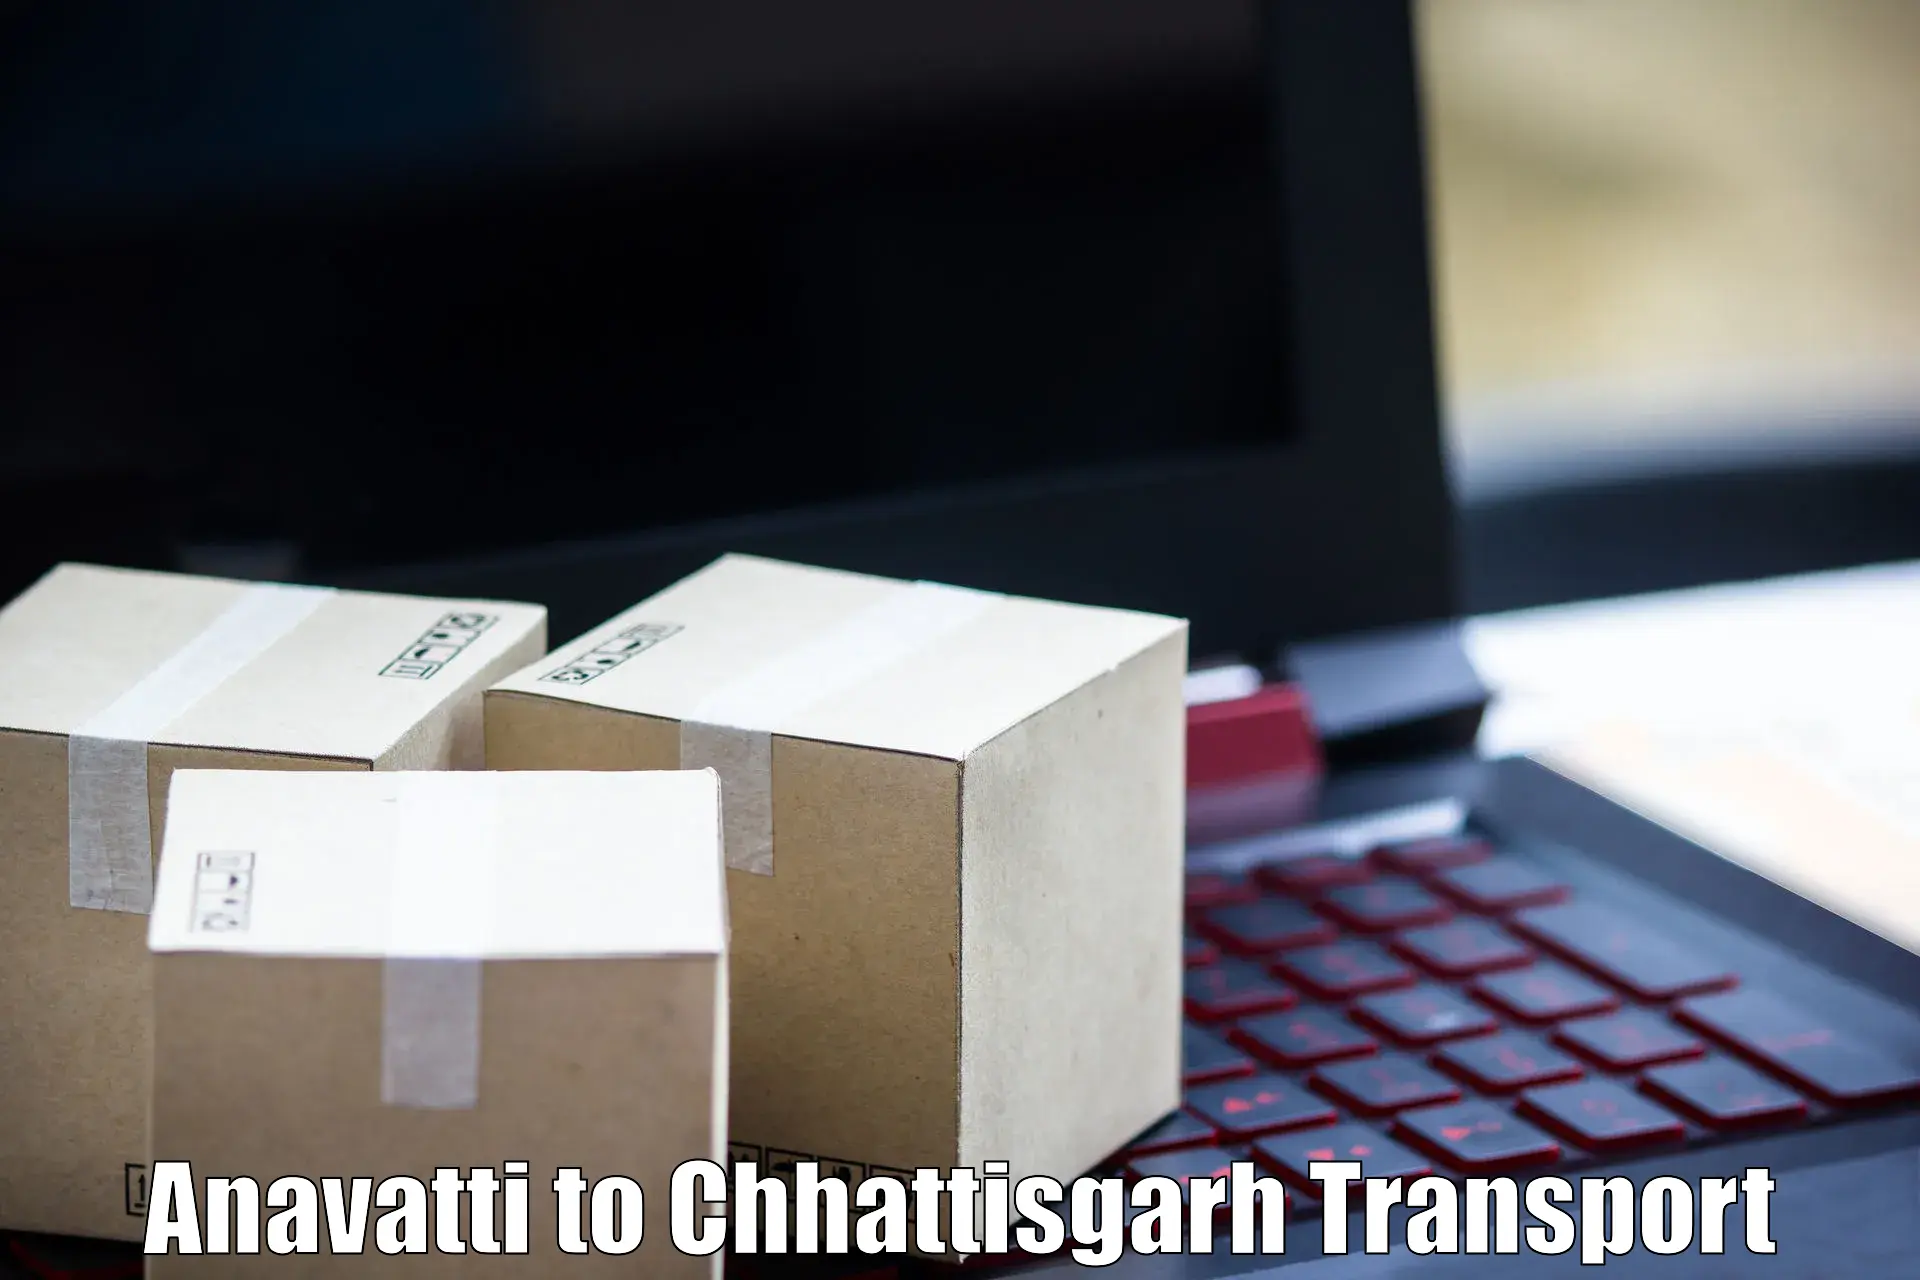 Container transportation services Anavatti to Korea Chhattisgarh